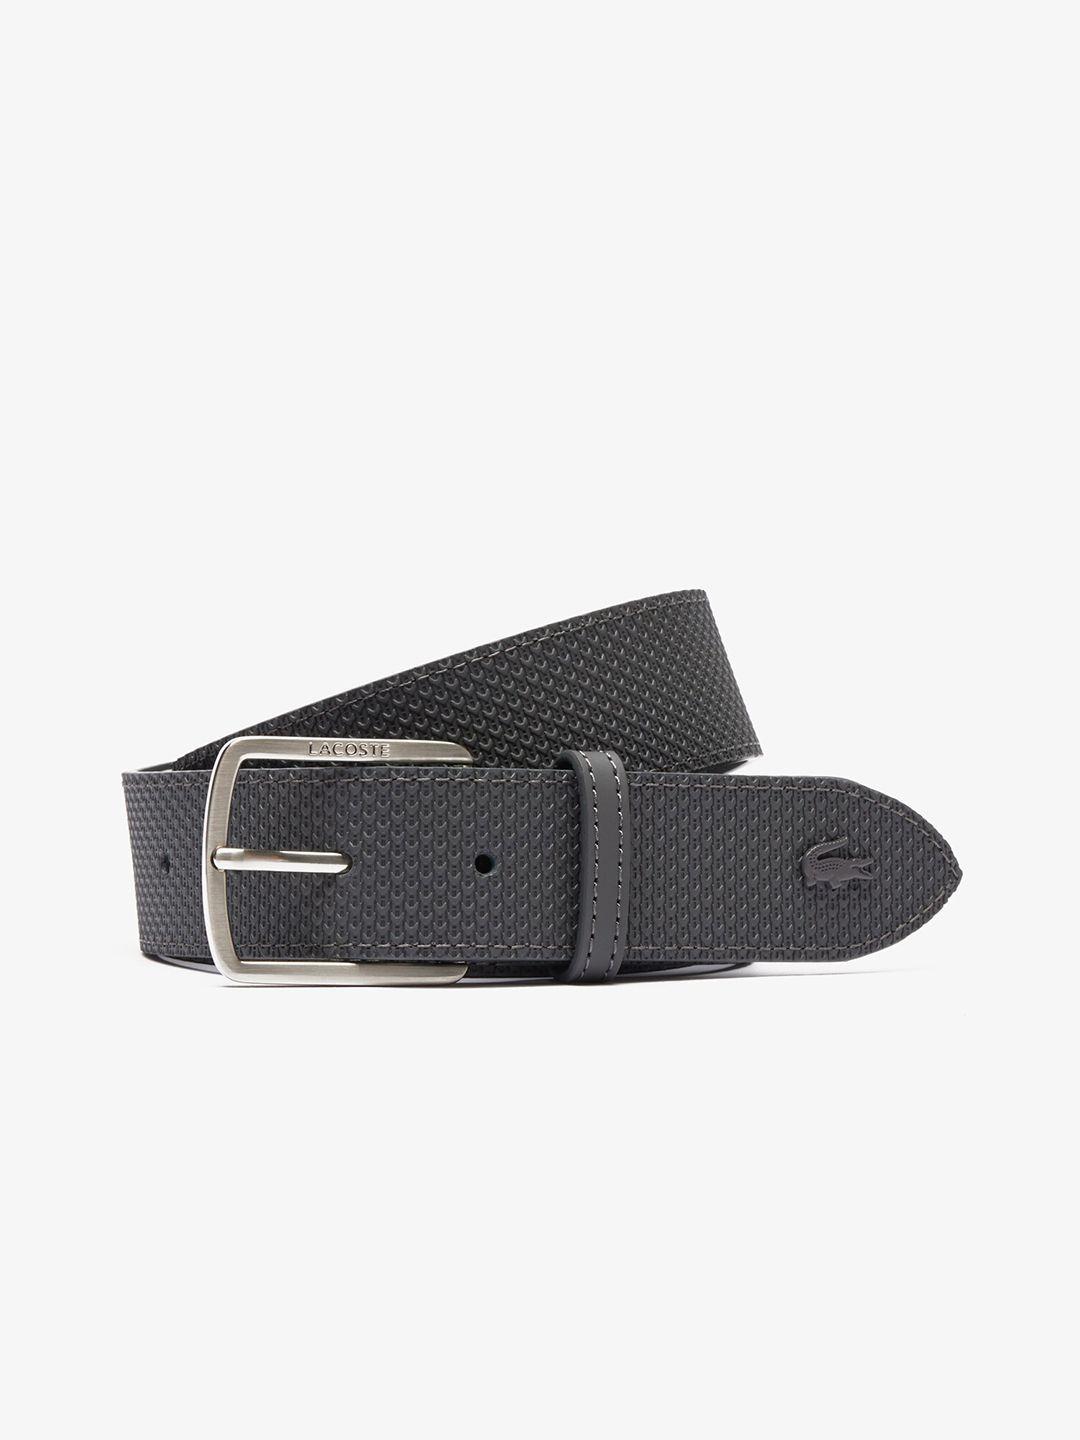 lacoste-men-grey-leather-belt